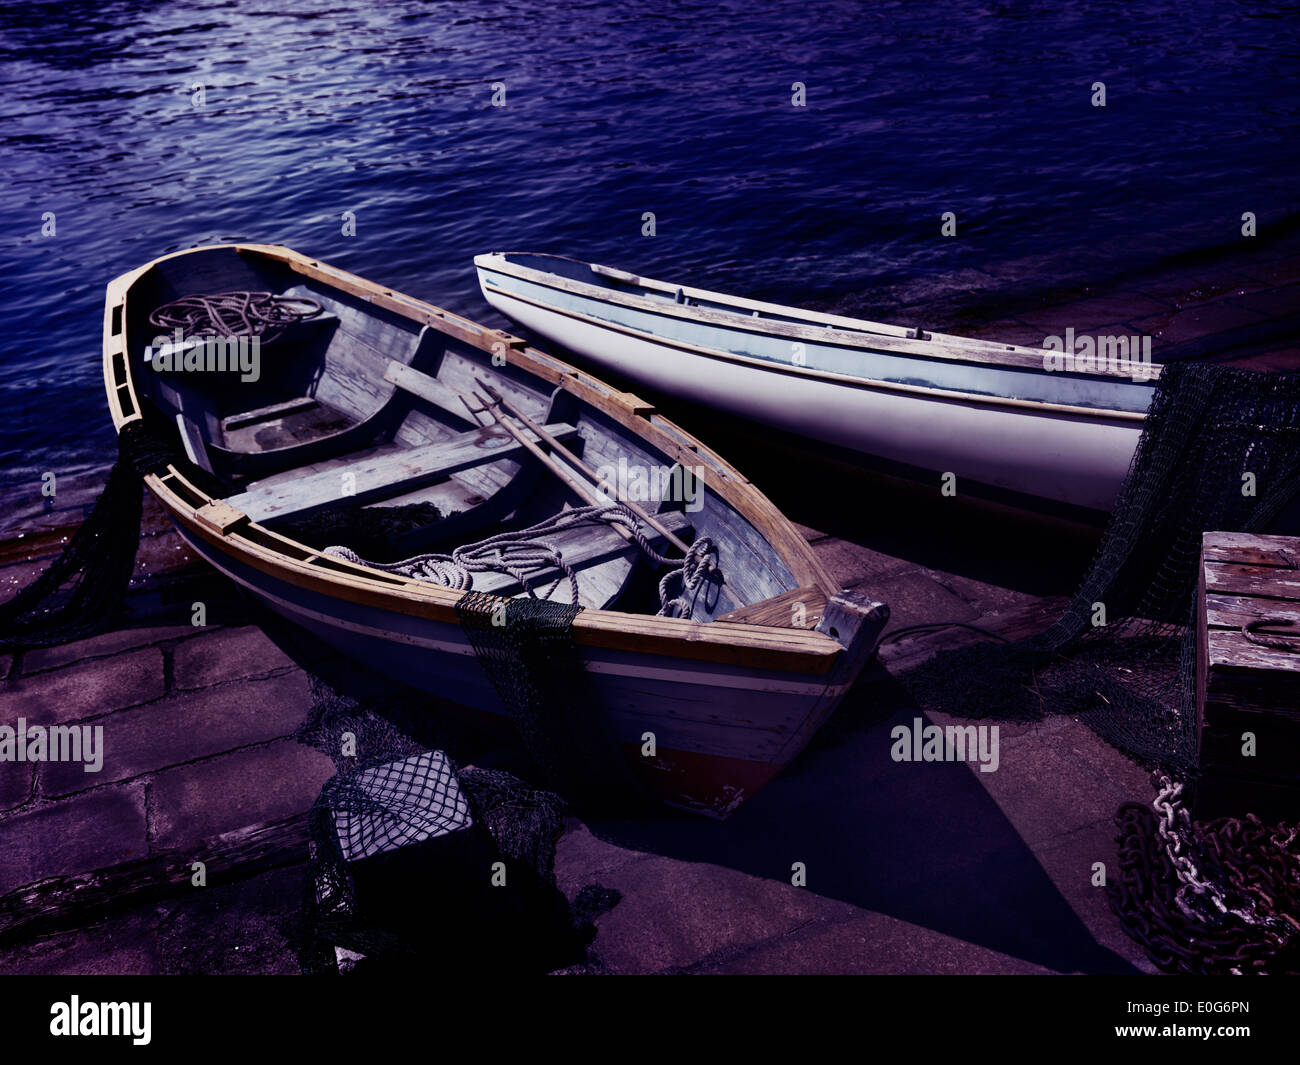 Vecchie barche di legno con reti da pesca su una spiaggia di notte Foto Stock